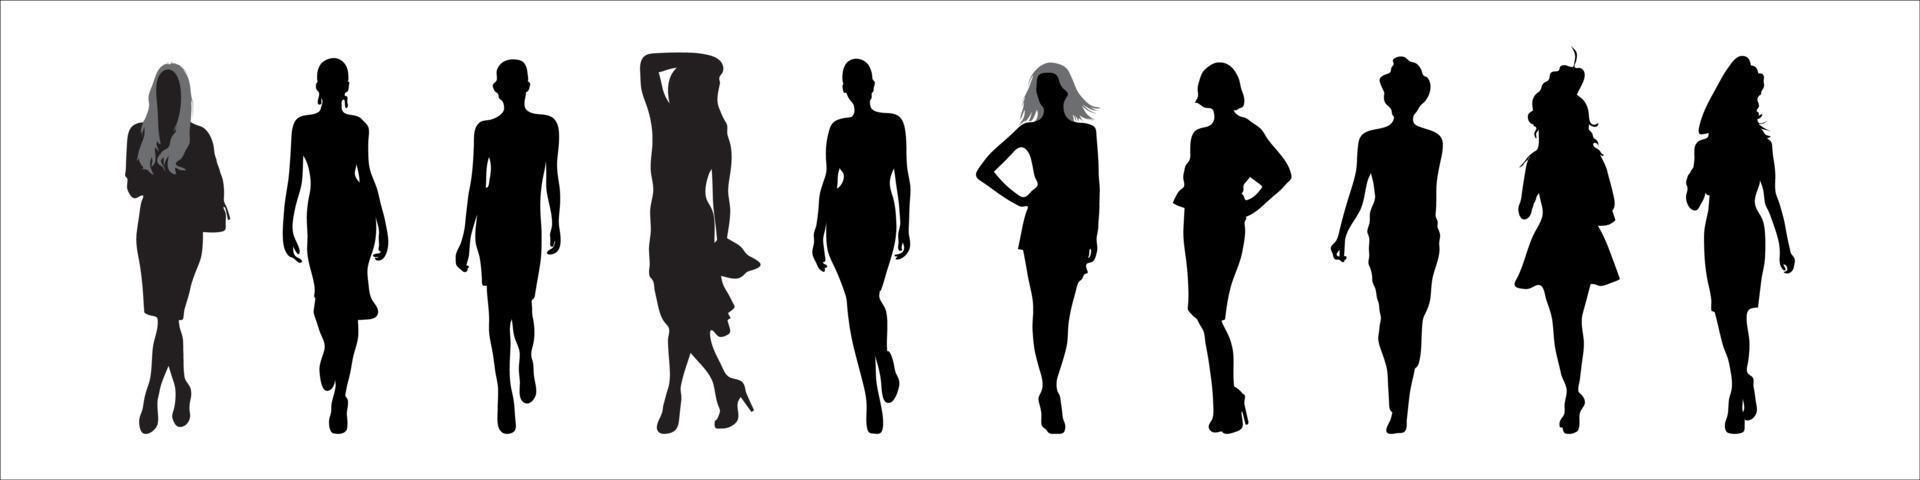 hoge kwaliteit vrouwen silhouetten vector